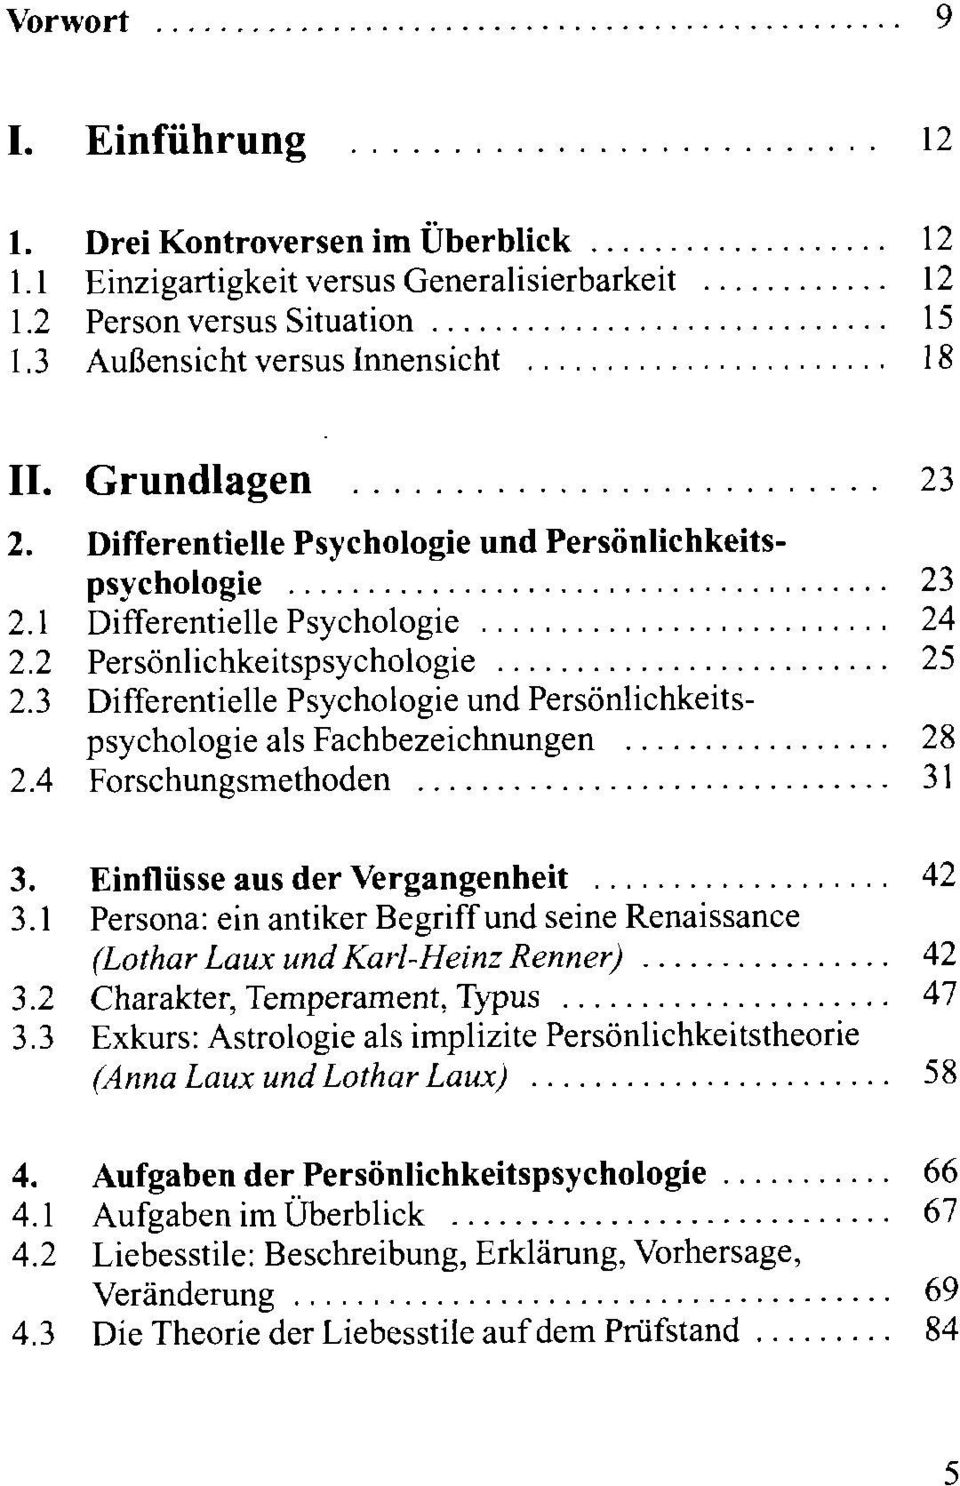 .. 25 Differentielle Psychologie und Persönlichkeitspsychologie als Fachbezeichnungen... 28 Forschungsmethoden... 31 Einflüsse aus der Vergangenheit.